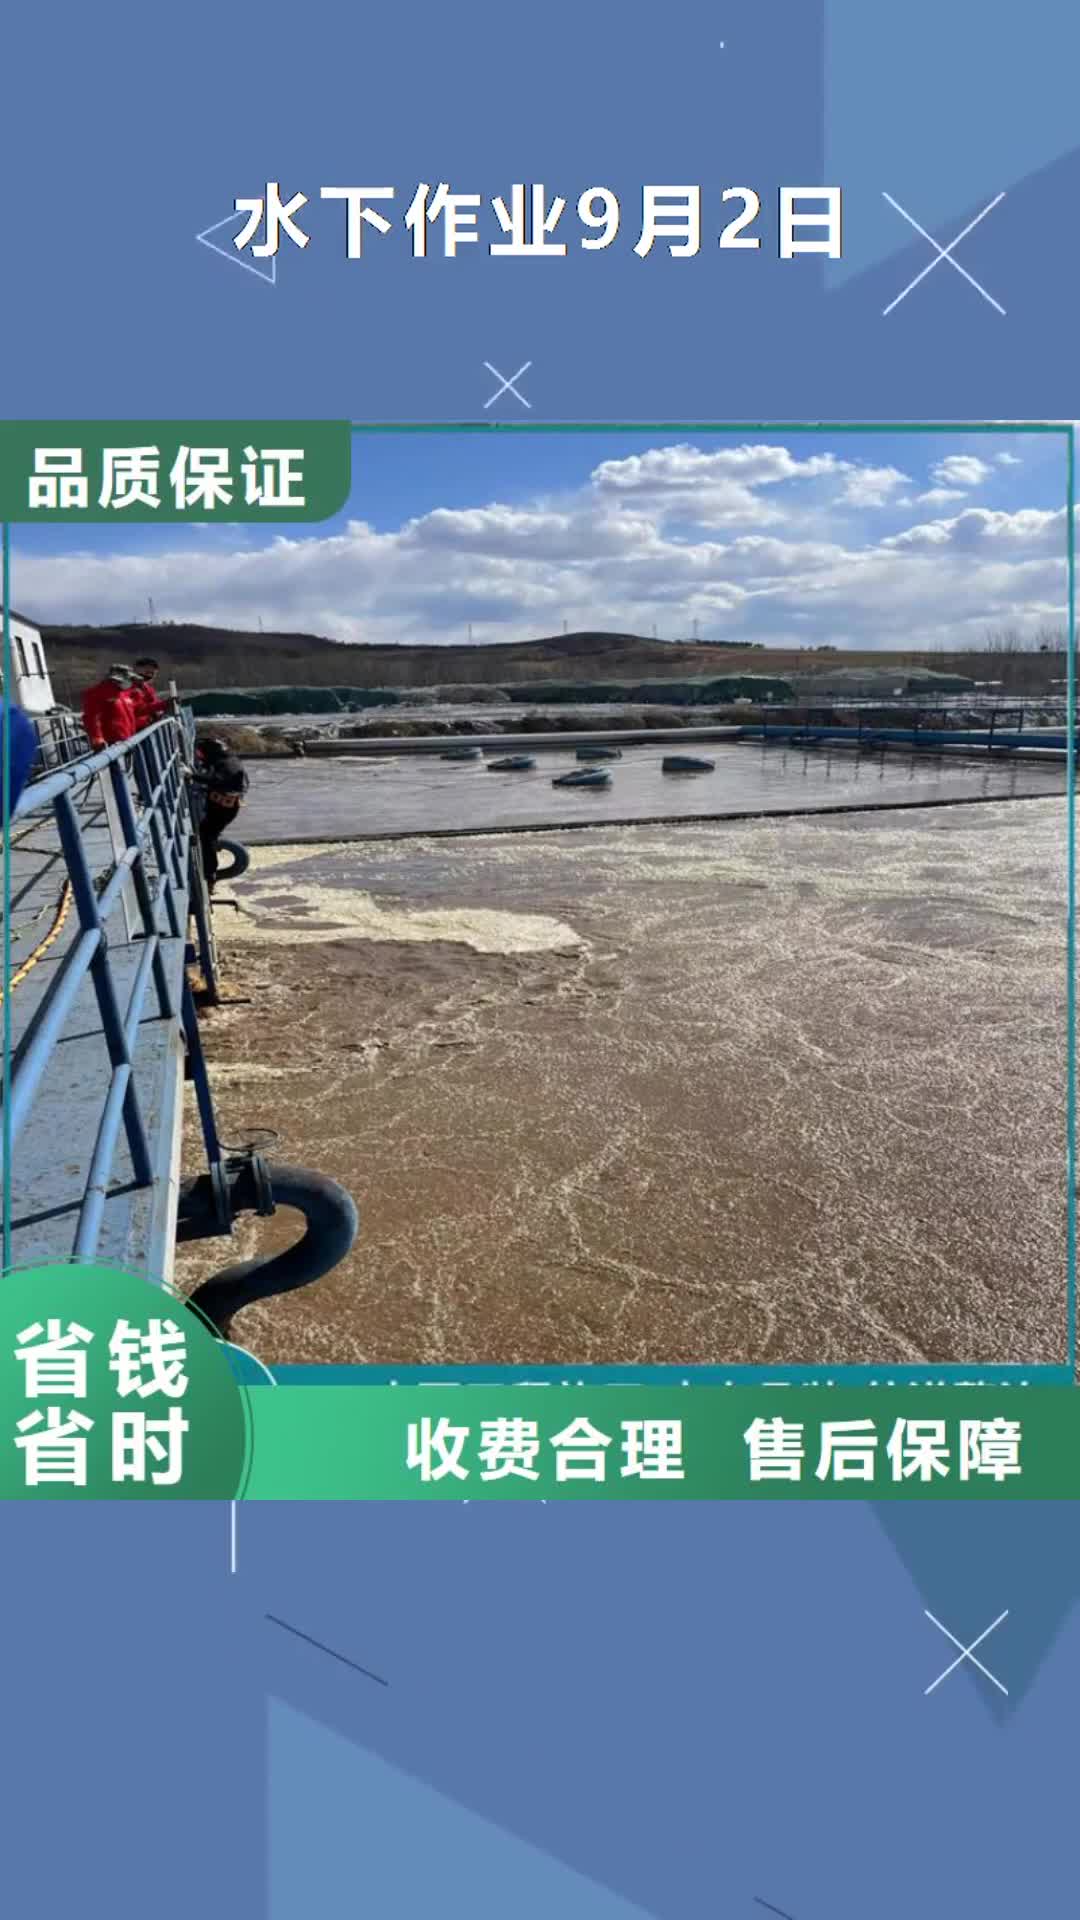 福州【水下作业9月2日】-管道带水堵漏公司24小时为您服务